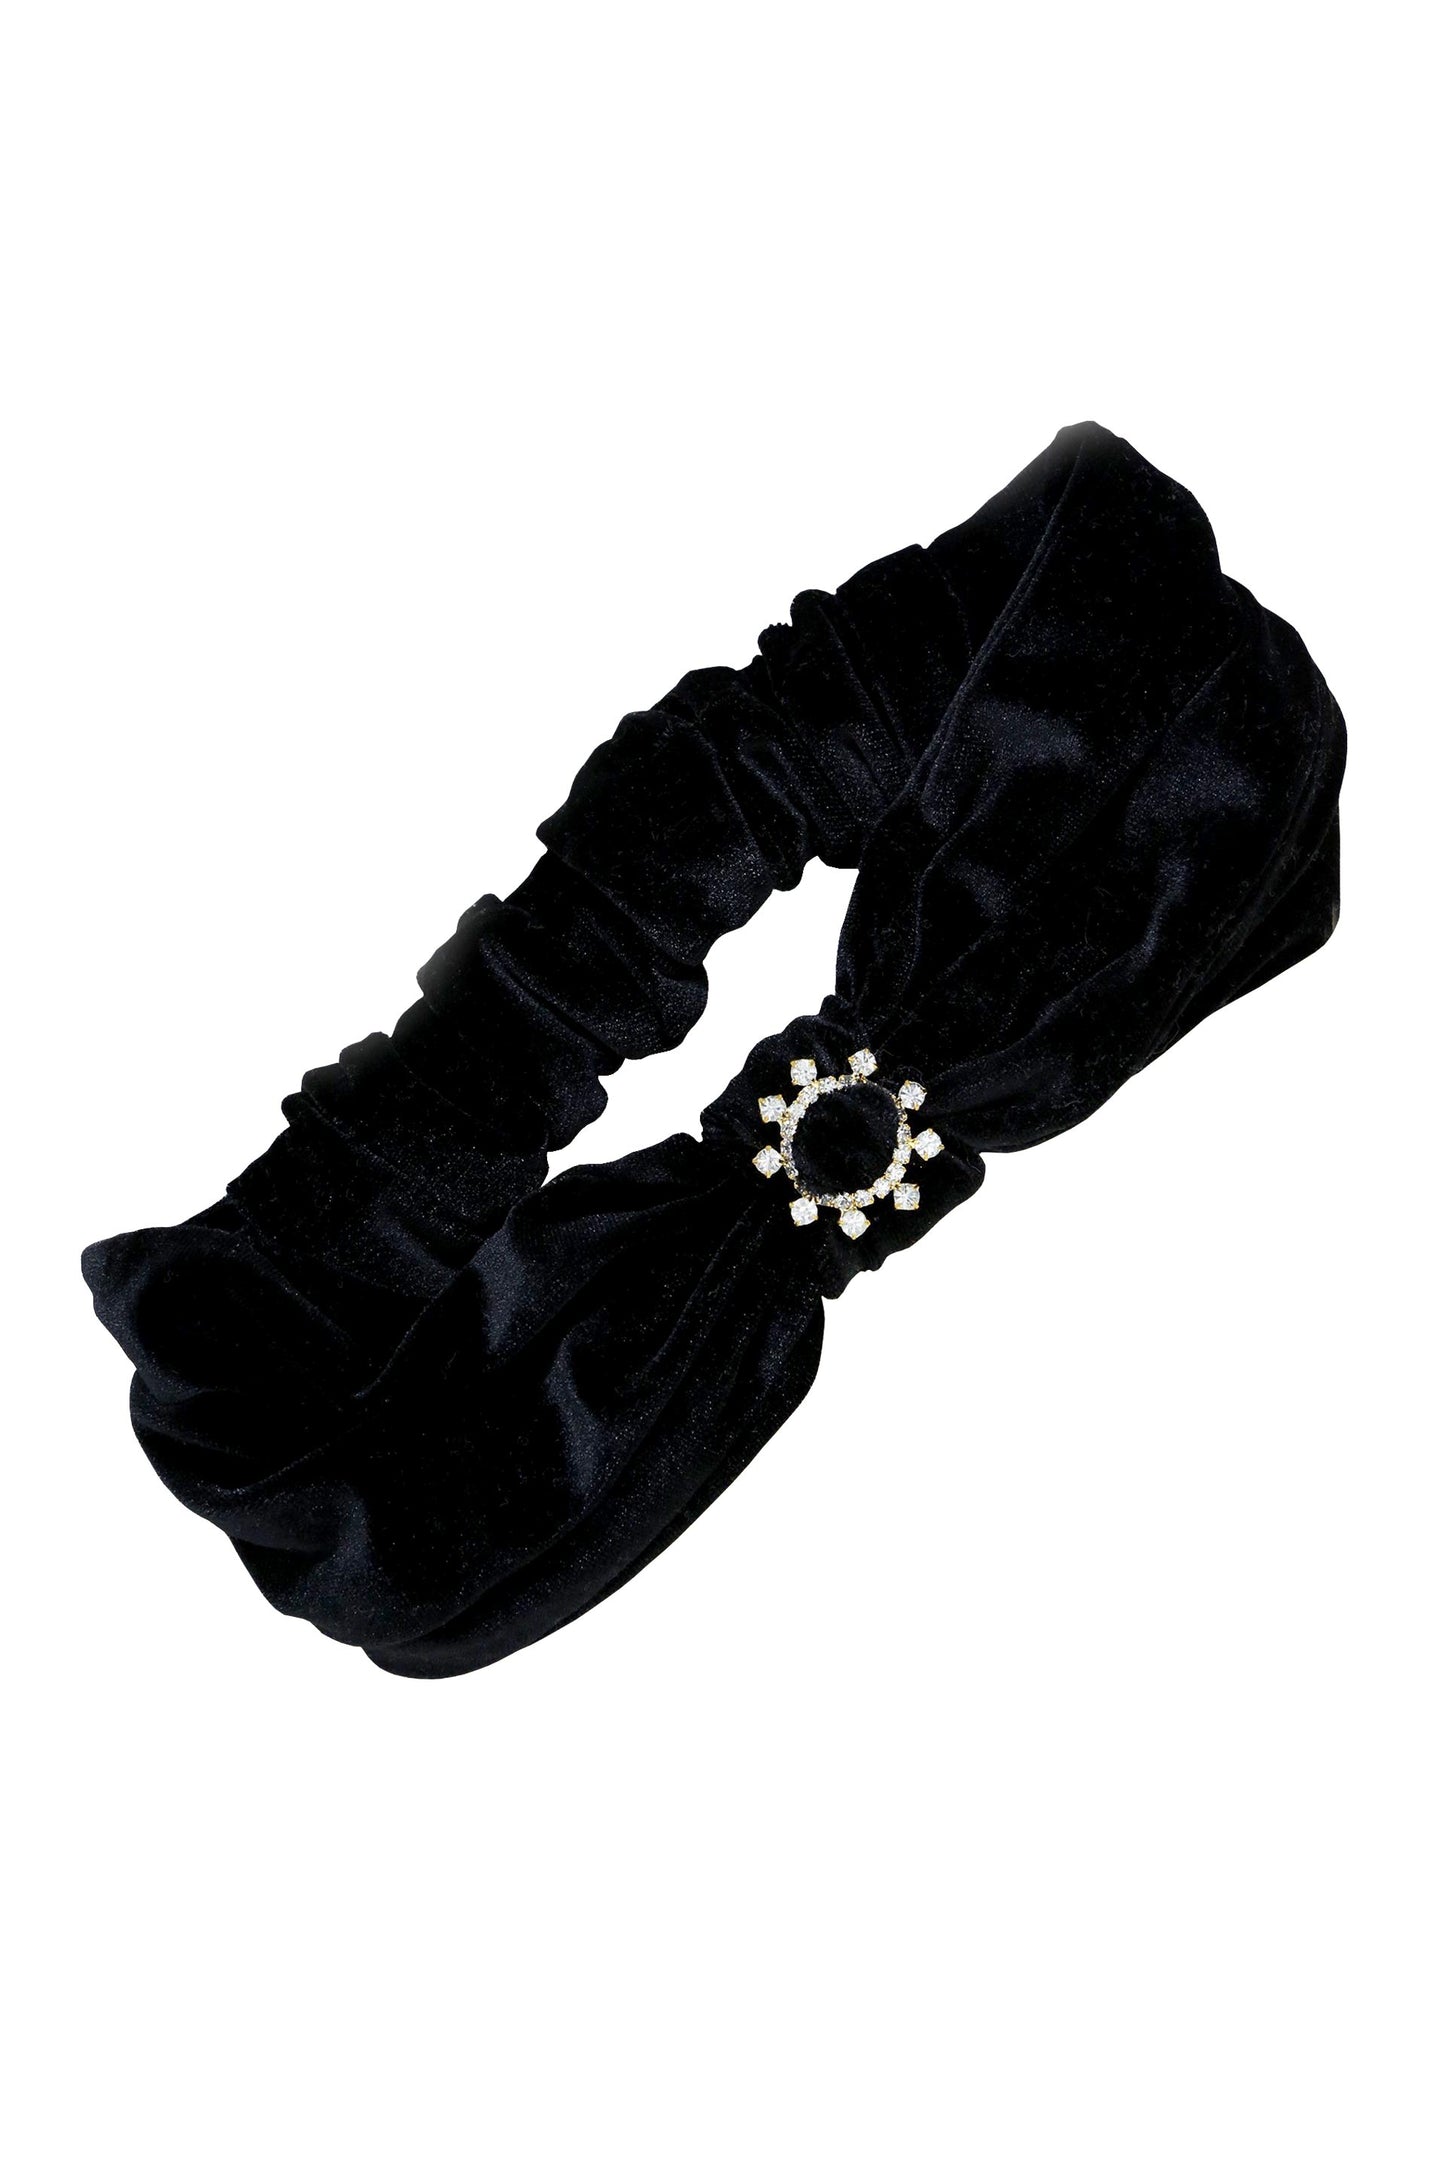 Velvet Headband with Crystal Ring in Black on white background  